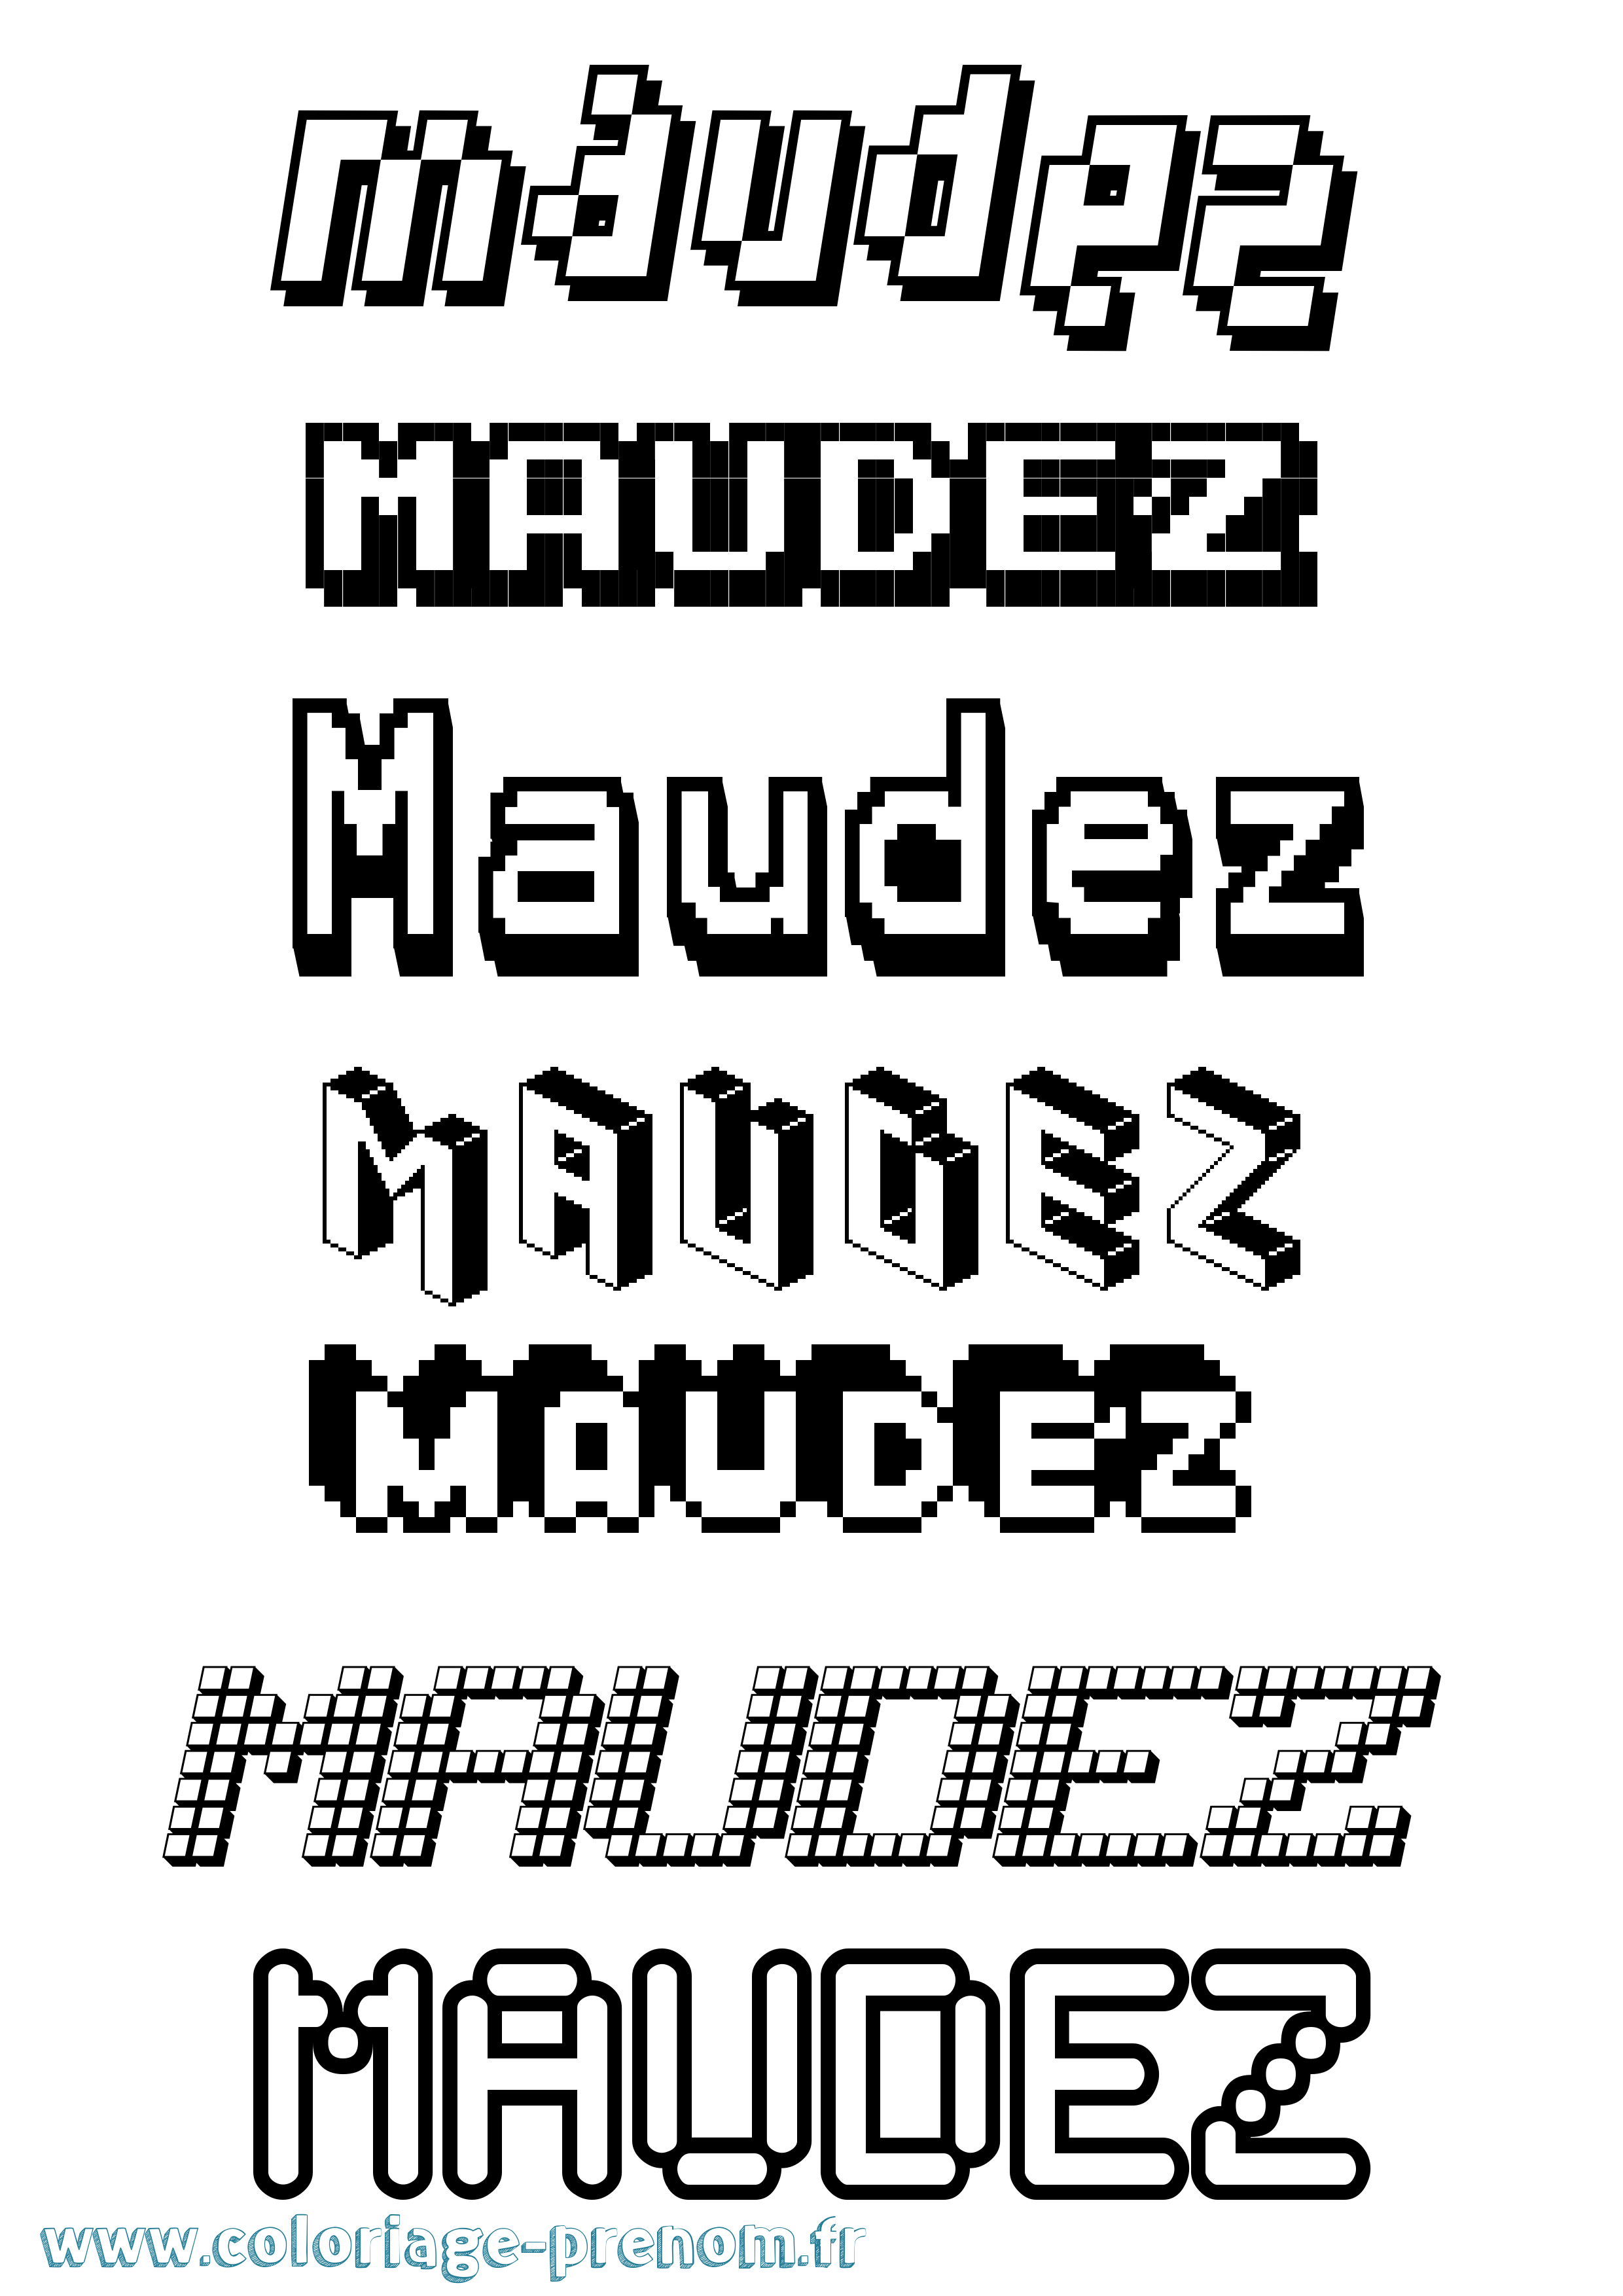 Coloriage prénom Maudez Pixel